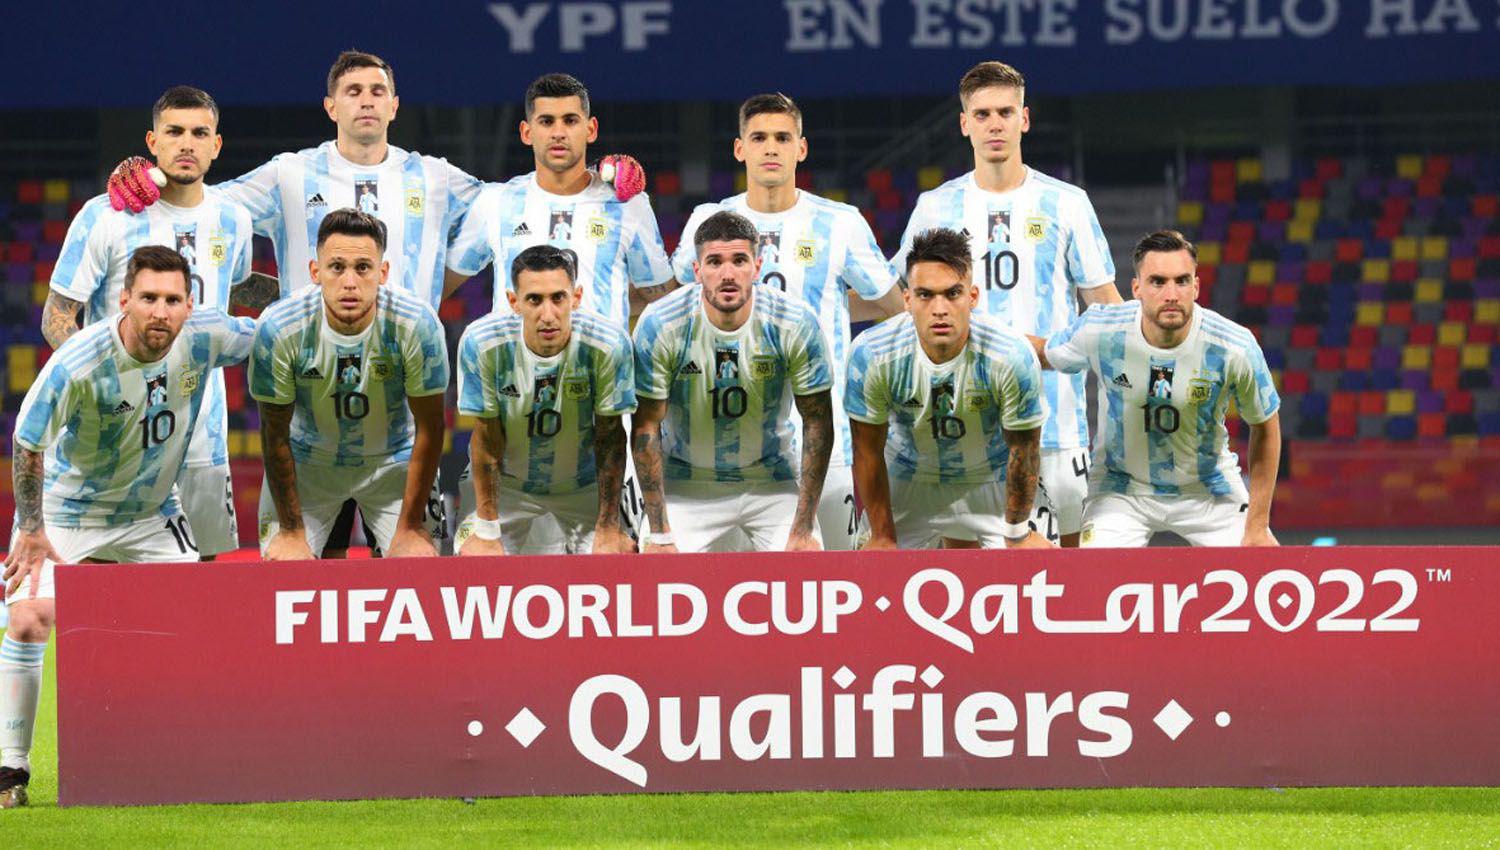 La Argentina jugó por primera vez en el Estadio Único cuando empató 1 a 1 con Chile y sin p�blico por la pandemia de coronavirus